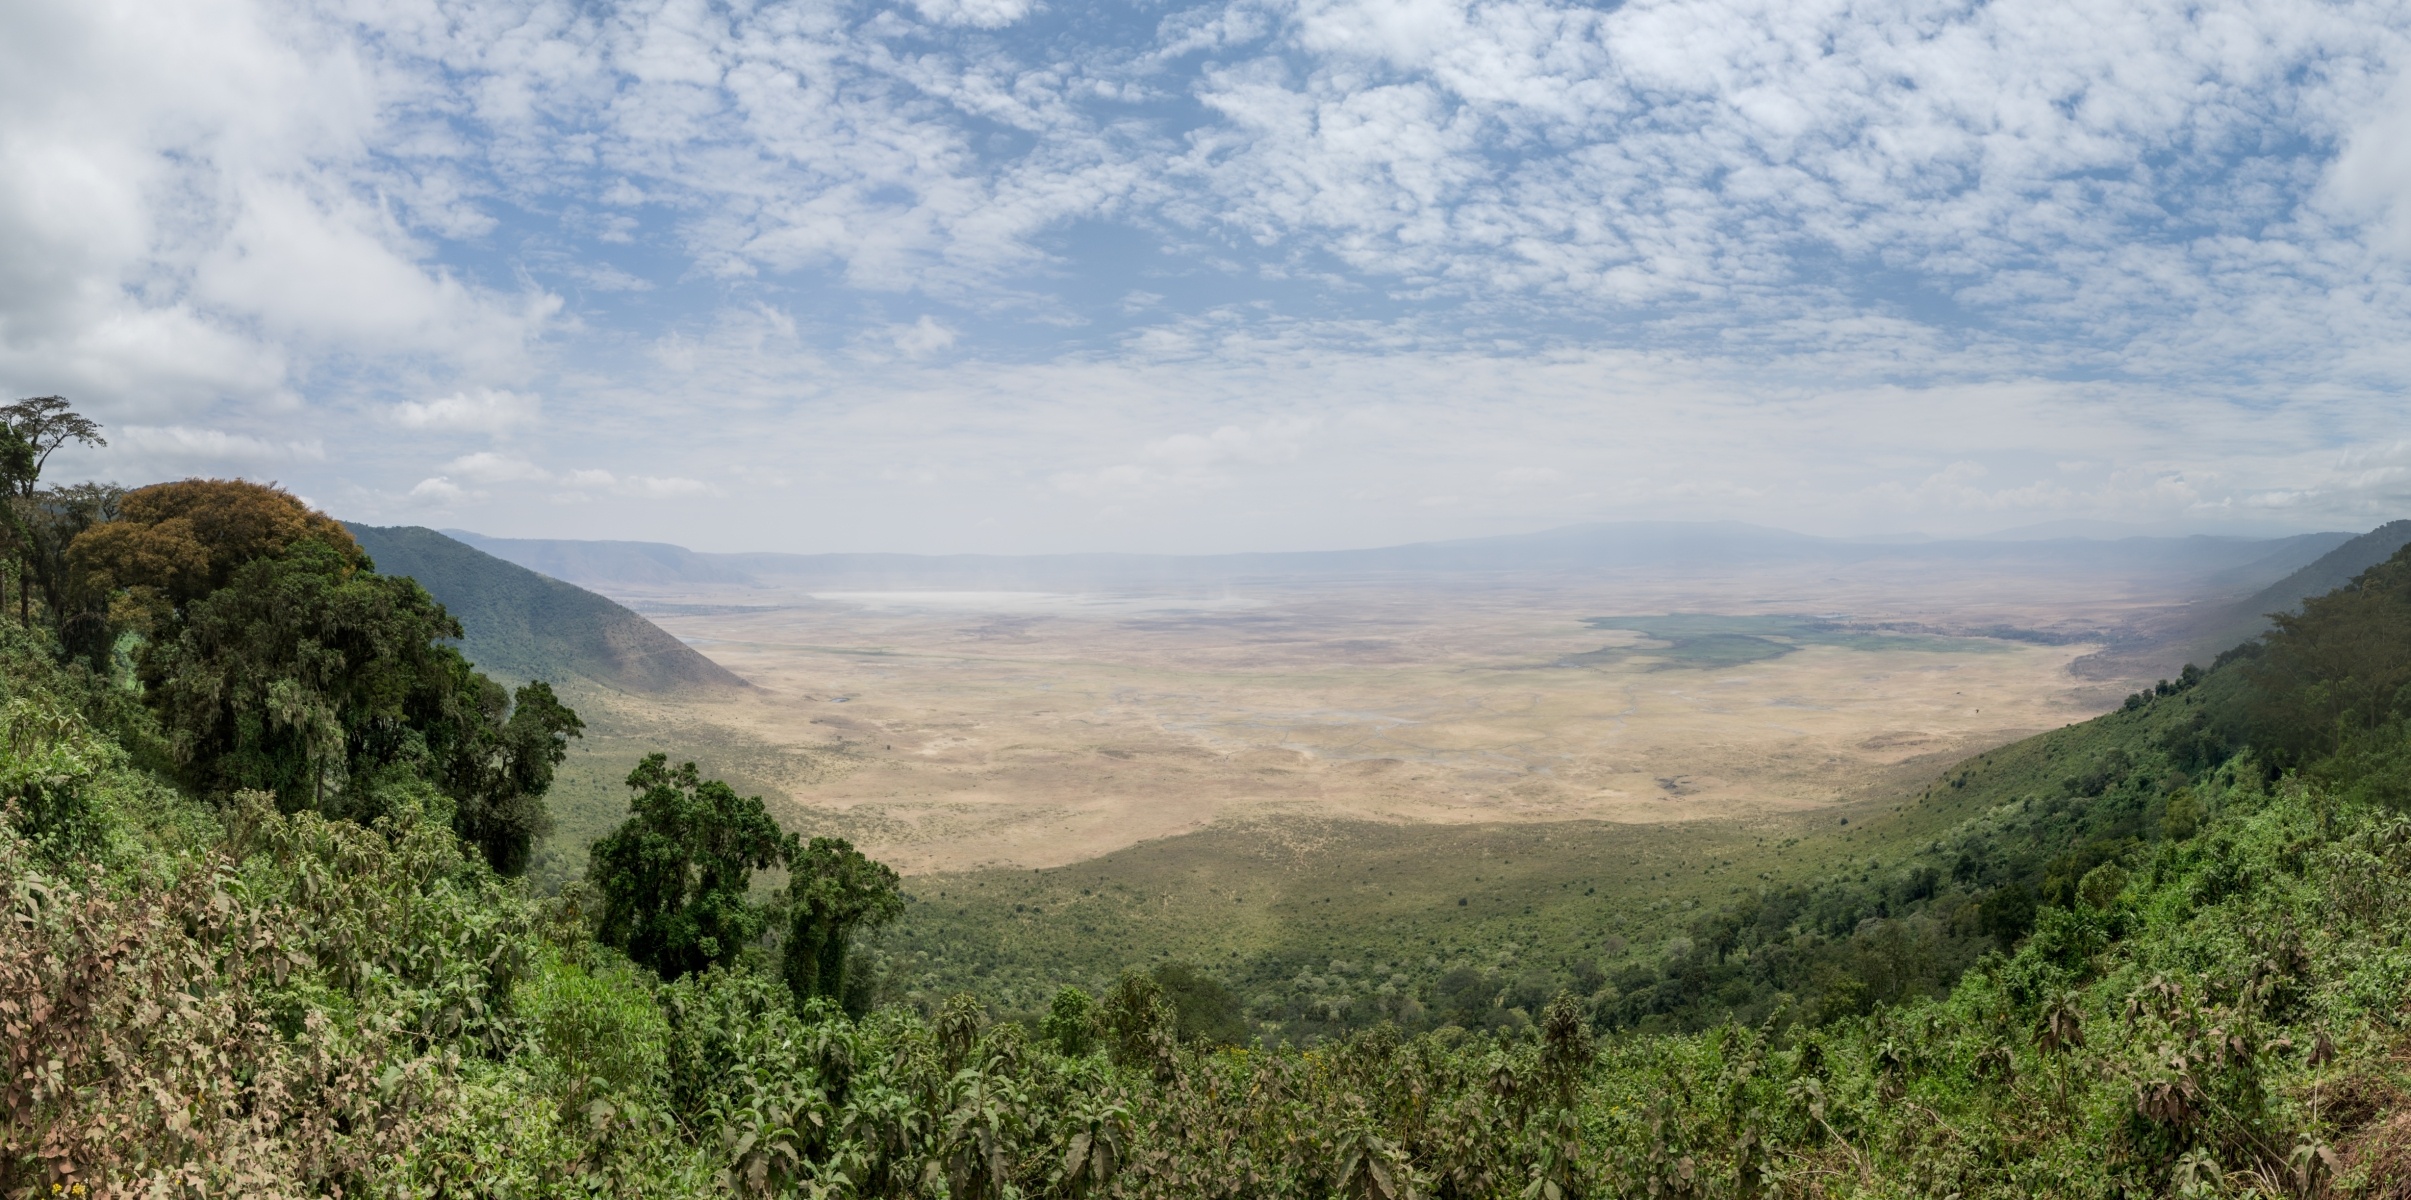 Tanzania, Ngorongoro Crater Highlands, 2420x1200 Dual Screen Desktop